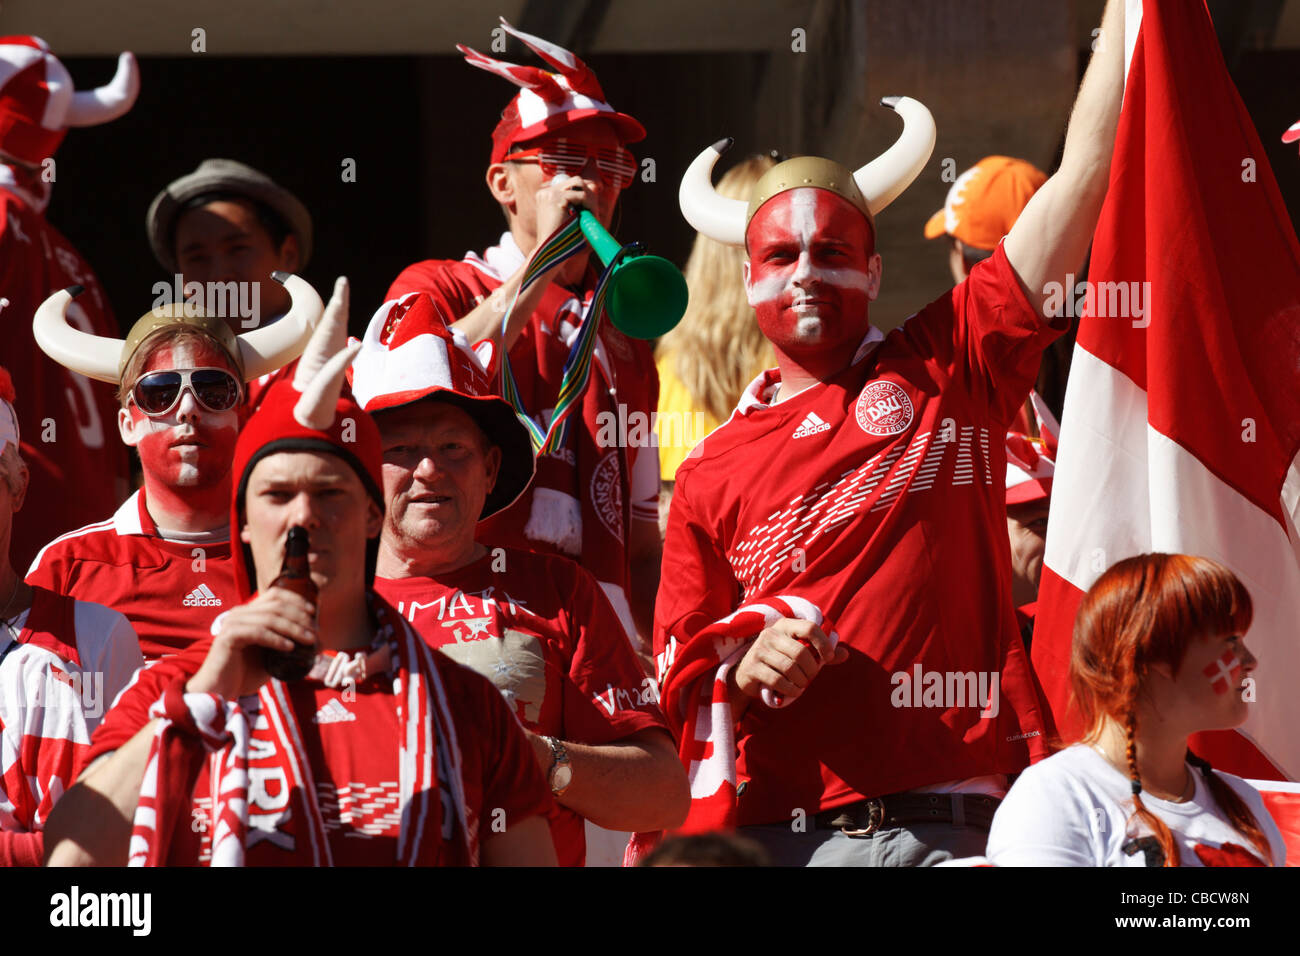 Dänemark-Fans auf der Tribüne für ein 2010 FIFA World Cup Soccer match zwischen Dänemark und den Niederlanden. Stockfoto